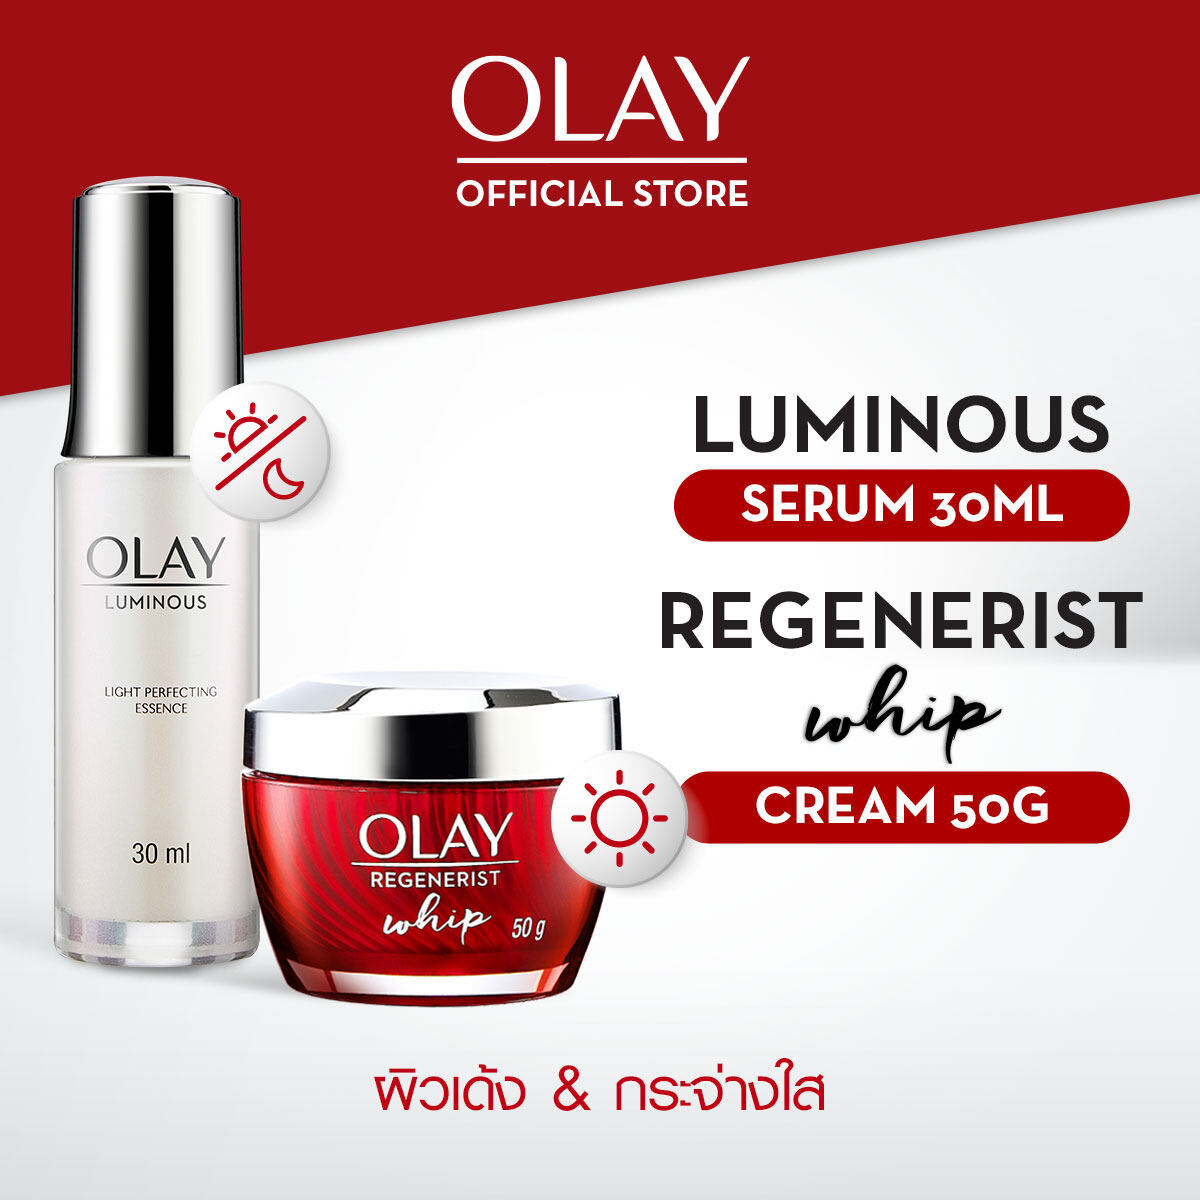 [เฉพาะสมาชิก Laz Beauty Club][ขายดีอันดับ 4] Olay Regenerist Whip + White Radiance Light Perfecting Essence โอเลย์ รีเจนเนอรีส วิป + ไวท์ เรเดียนซ์ ไลท์ เพอร์เฟค